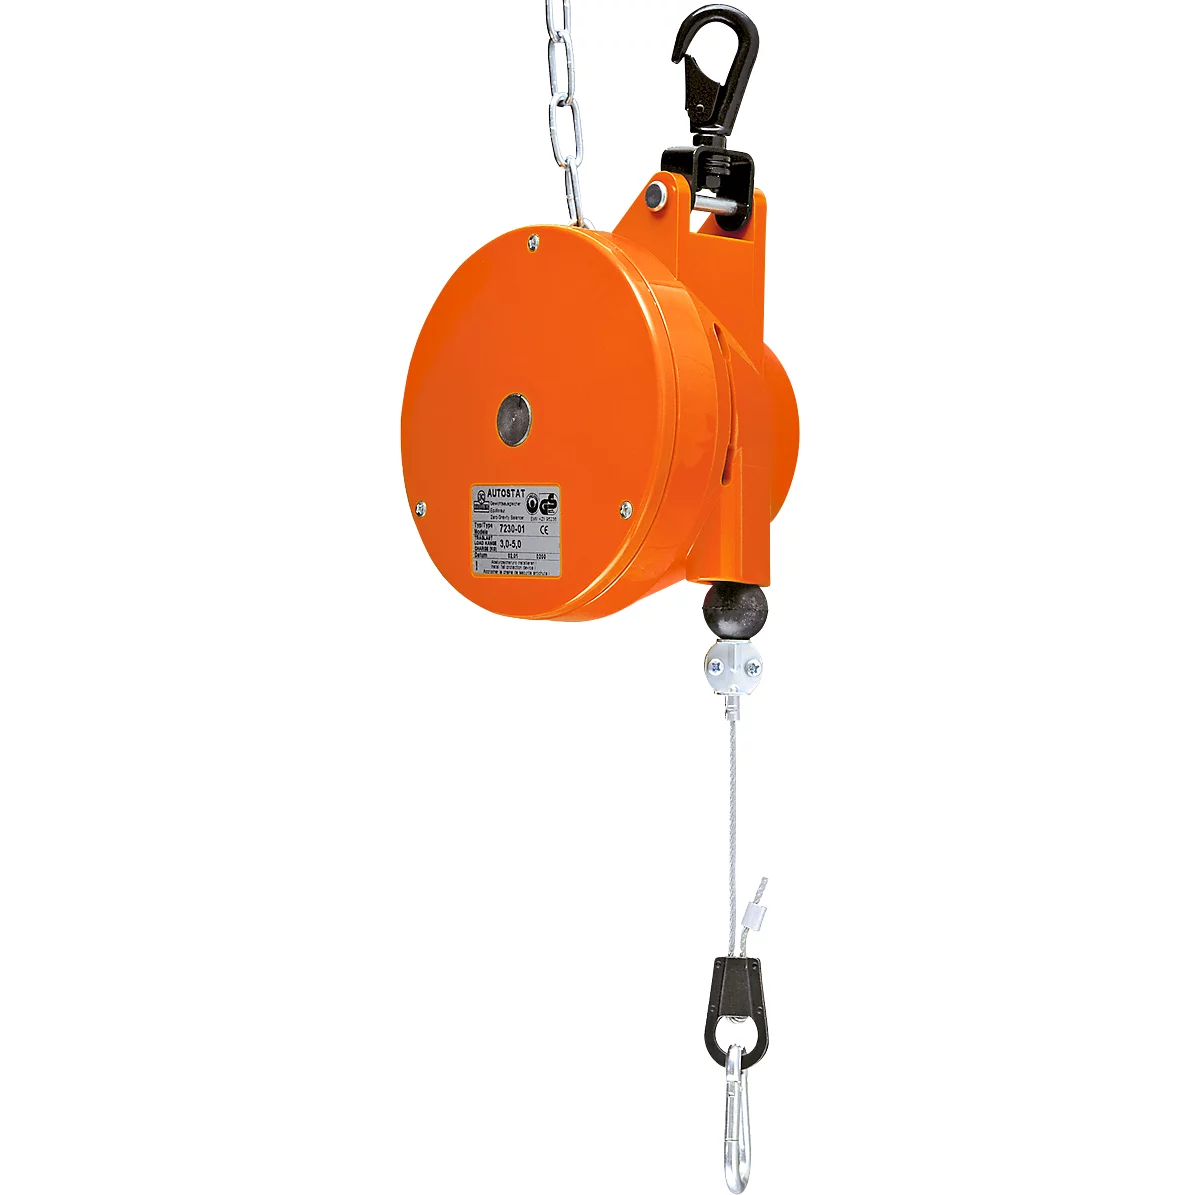 Autostato HAHN+KOLB con resorte tipo 7230, con equilibrador, capacidad de carga de 4,5 a 7,0 kg, longitud de extensión del cable hasta 2000 mm, plástico especial, naranja